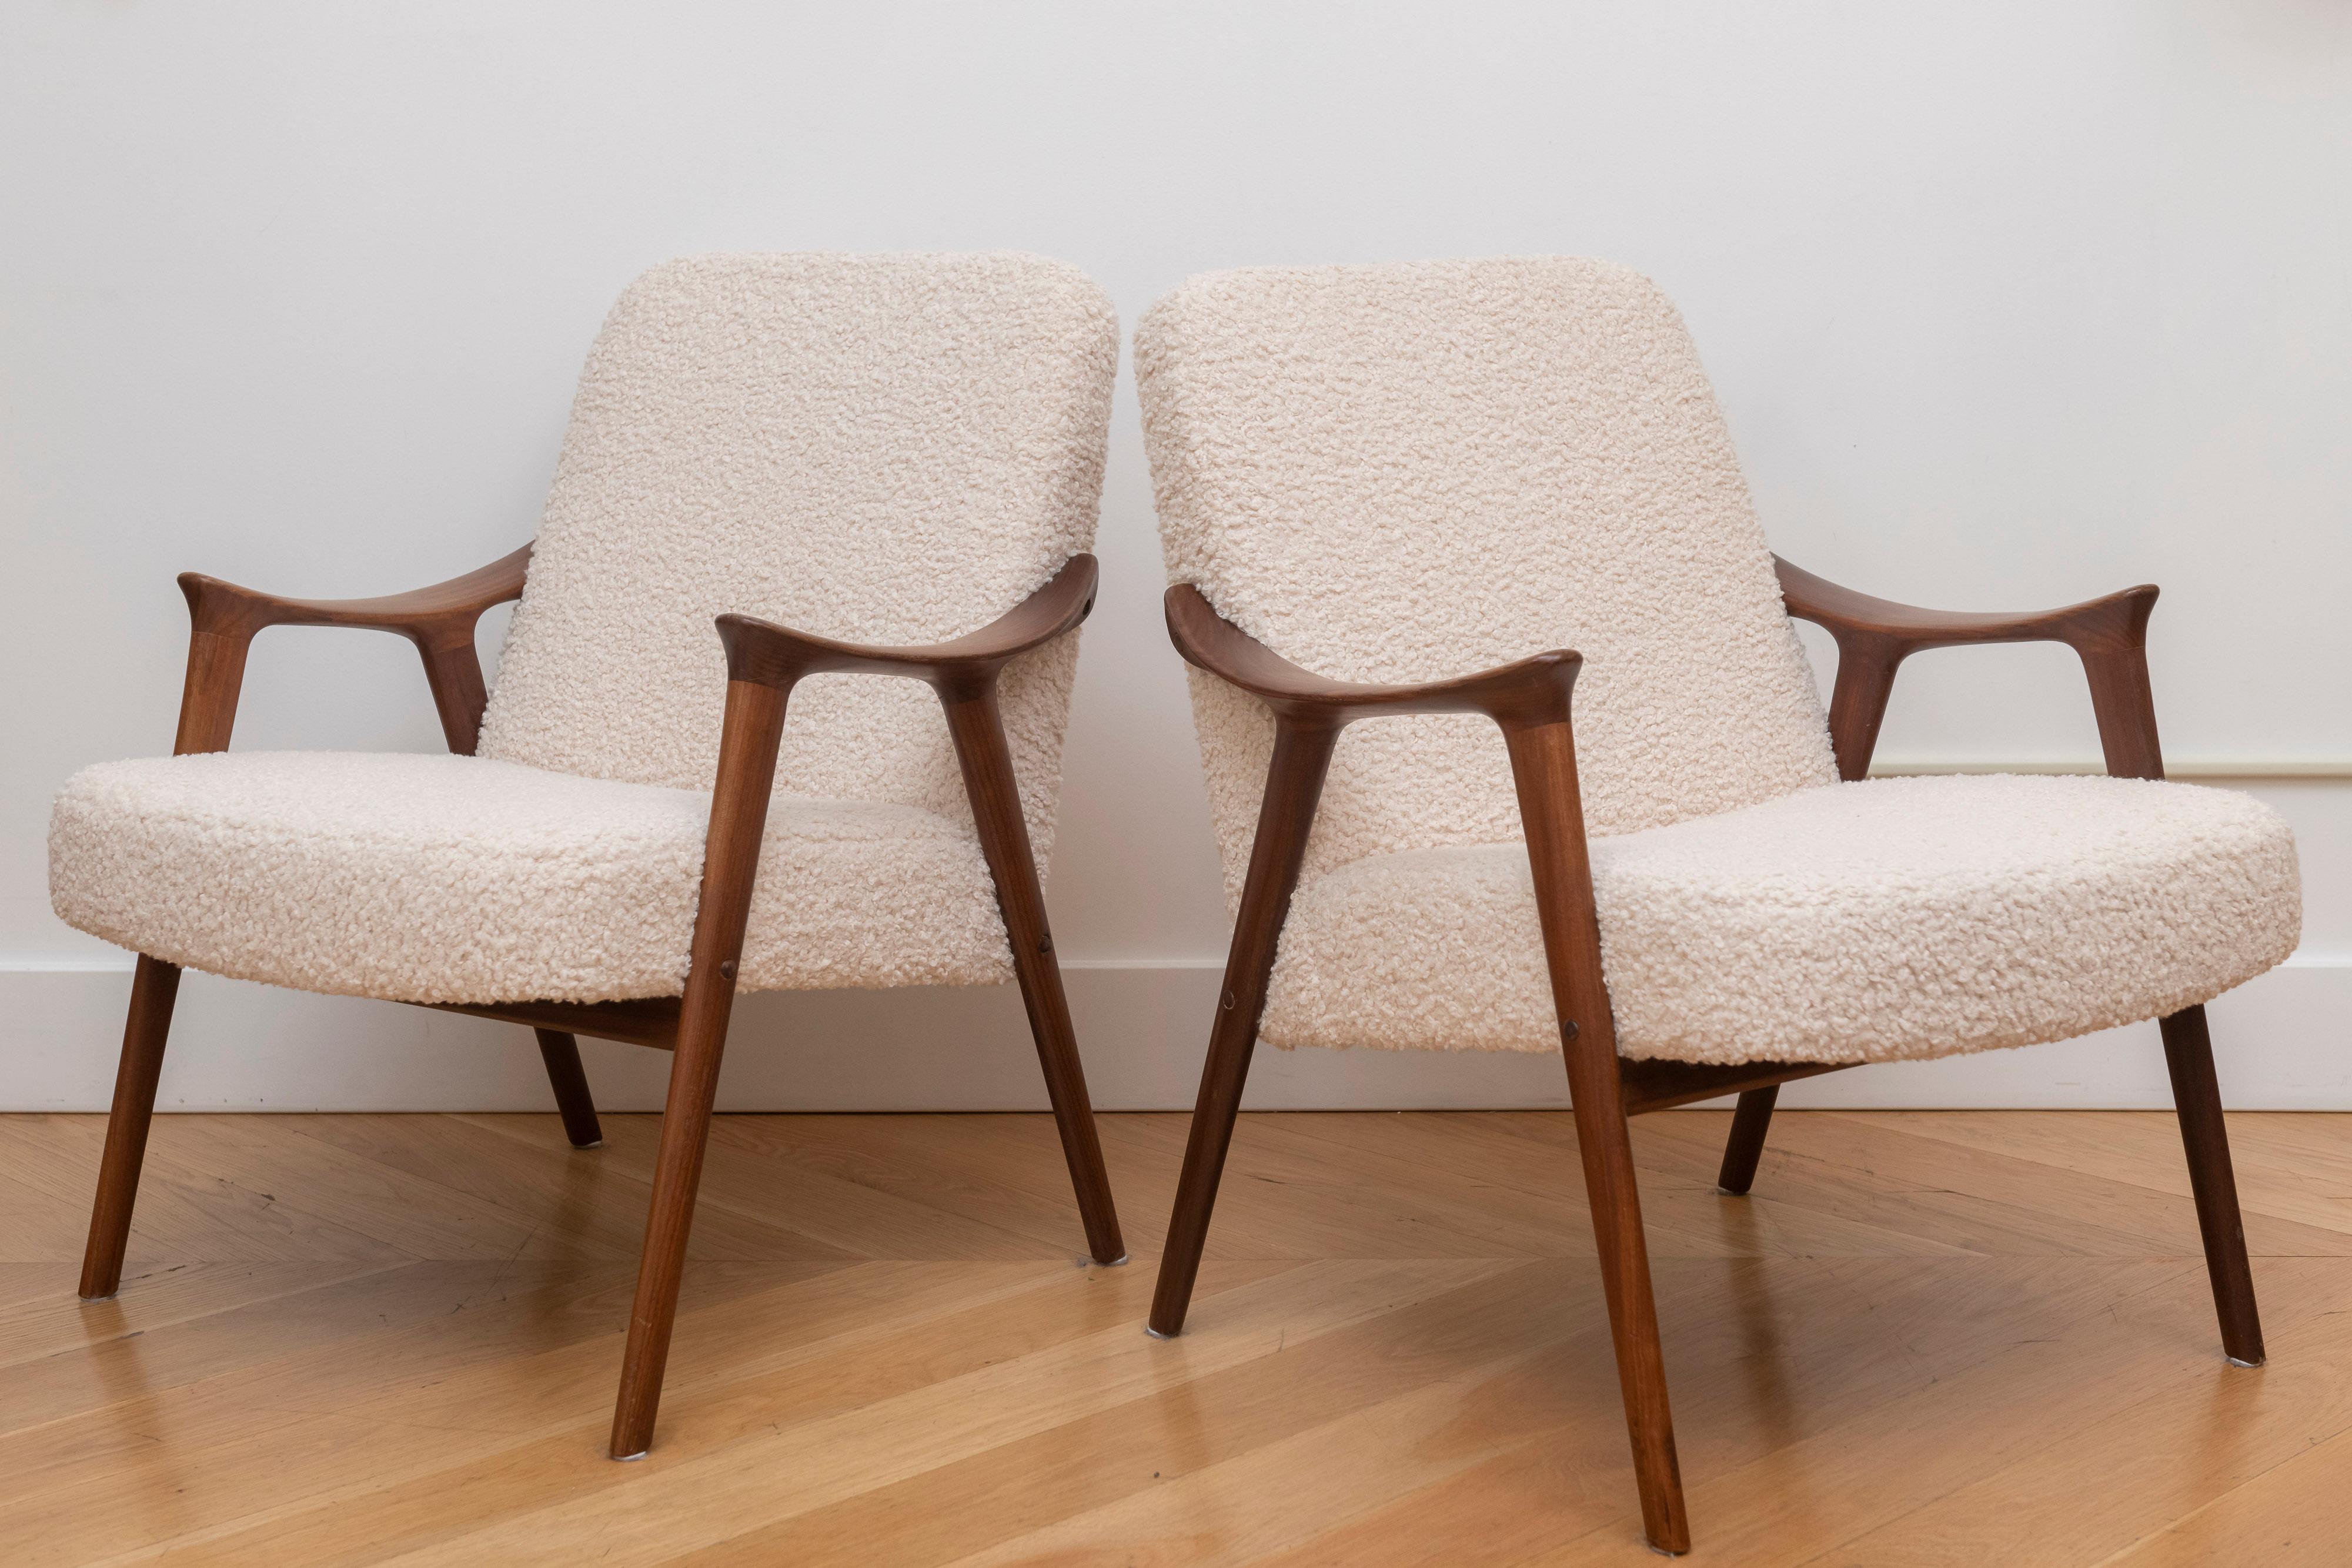 Superbes fauteuils vintage en bois massif d'afromosia, conçus par Ingmar Relling pour Westnofa dans les années 1960.
L'état de l'ensemble est superbe, nous l'avons fait tapisser récemment dans un joli tissu bouclé. Le cadre est propre, solide et